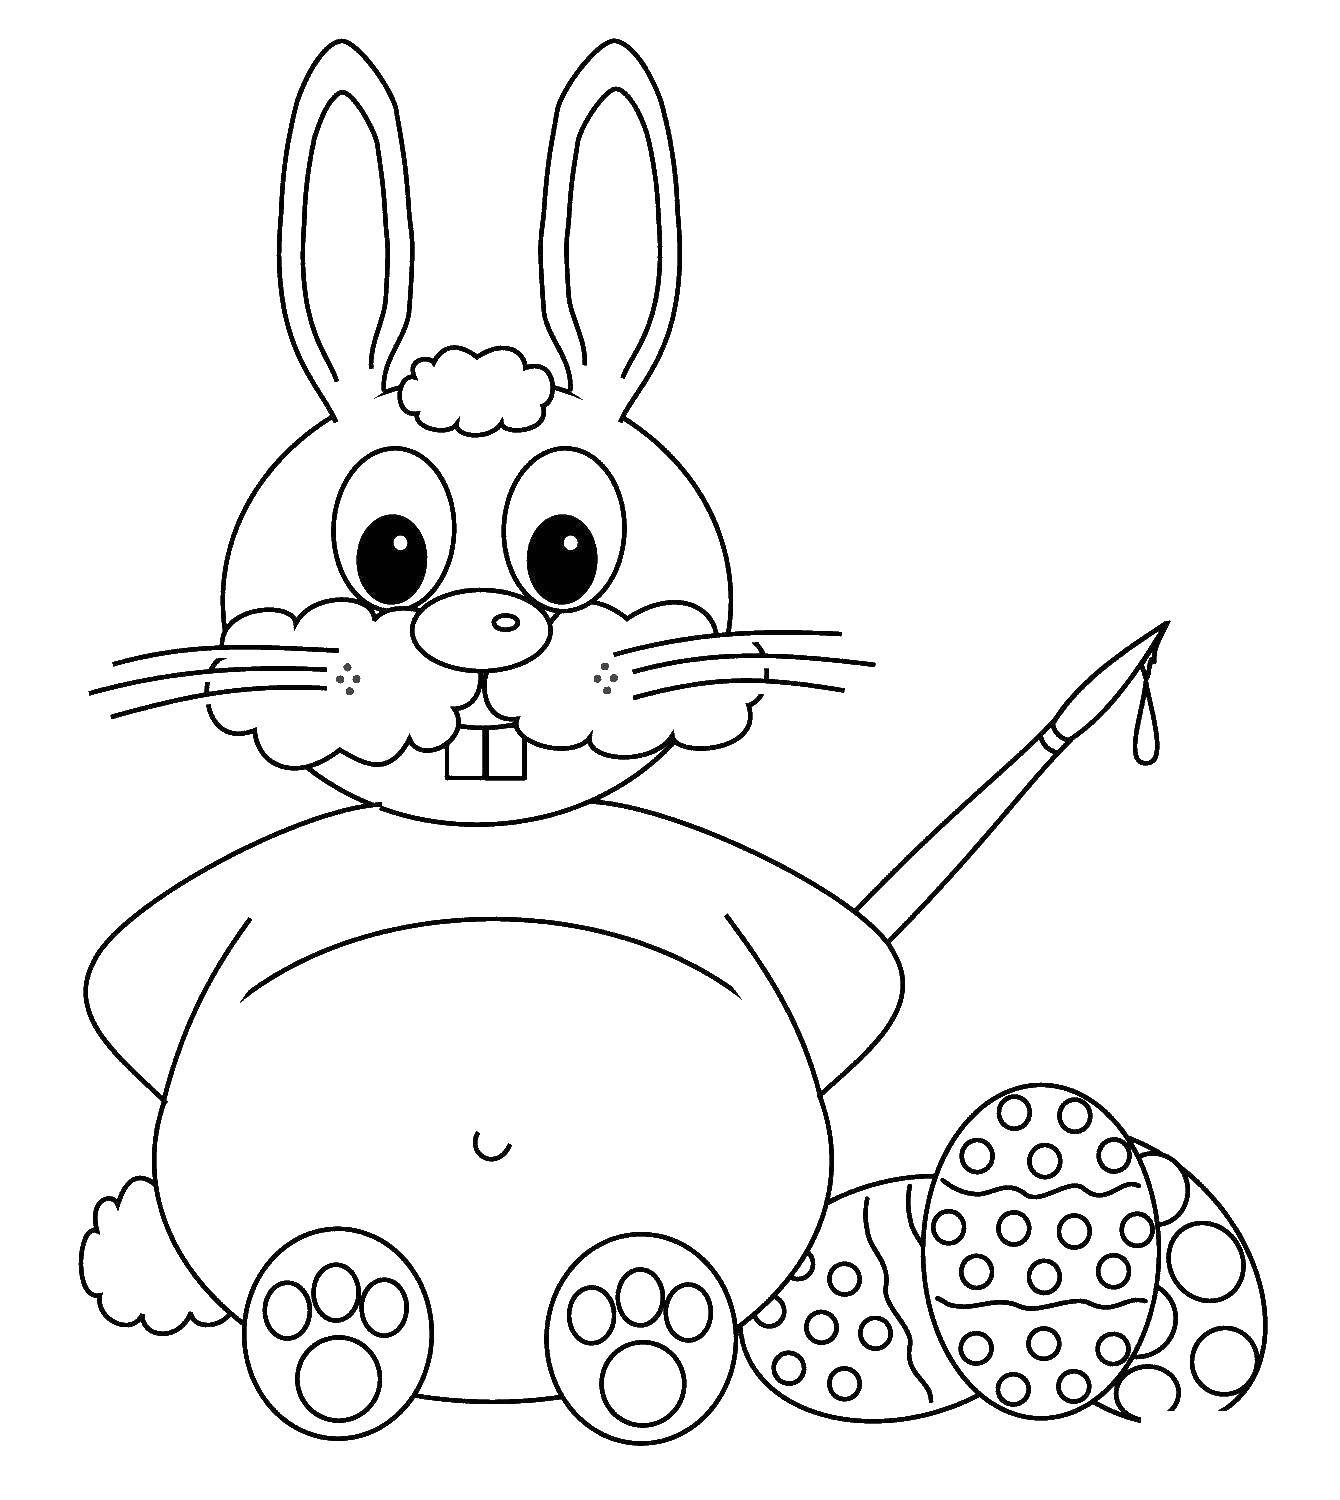 Название: Раскраска Пасхальный кролик с яйцами. Категория: пасхальный кролик. Теги: пасха, яйца, кролик.